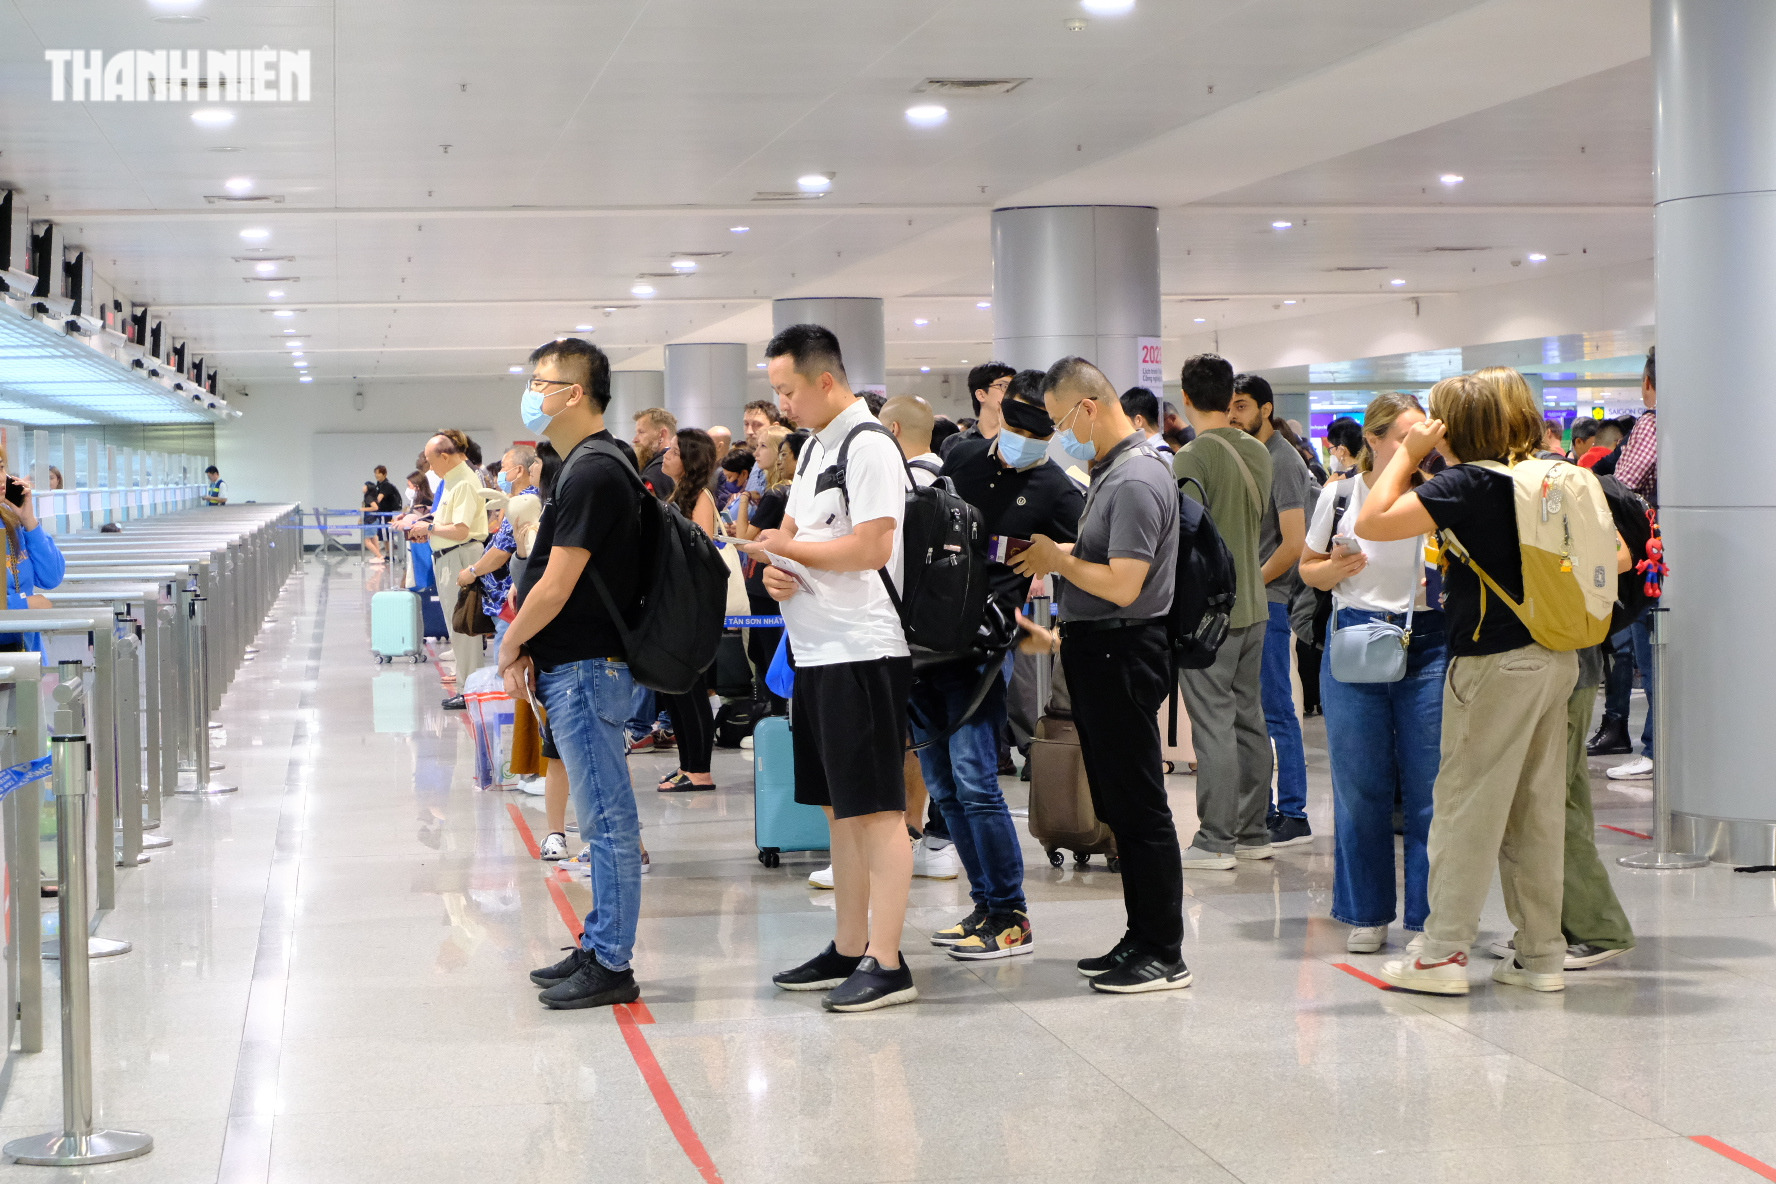 Tân Sơn Nhất chính thức thử nghiệm scan passport cho người Việt, nhập cảnh chỉ 30 giây - Ảnh 13.